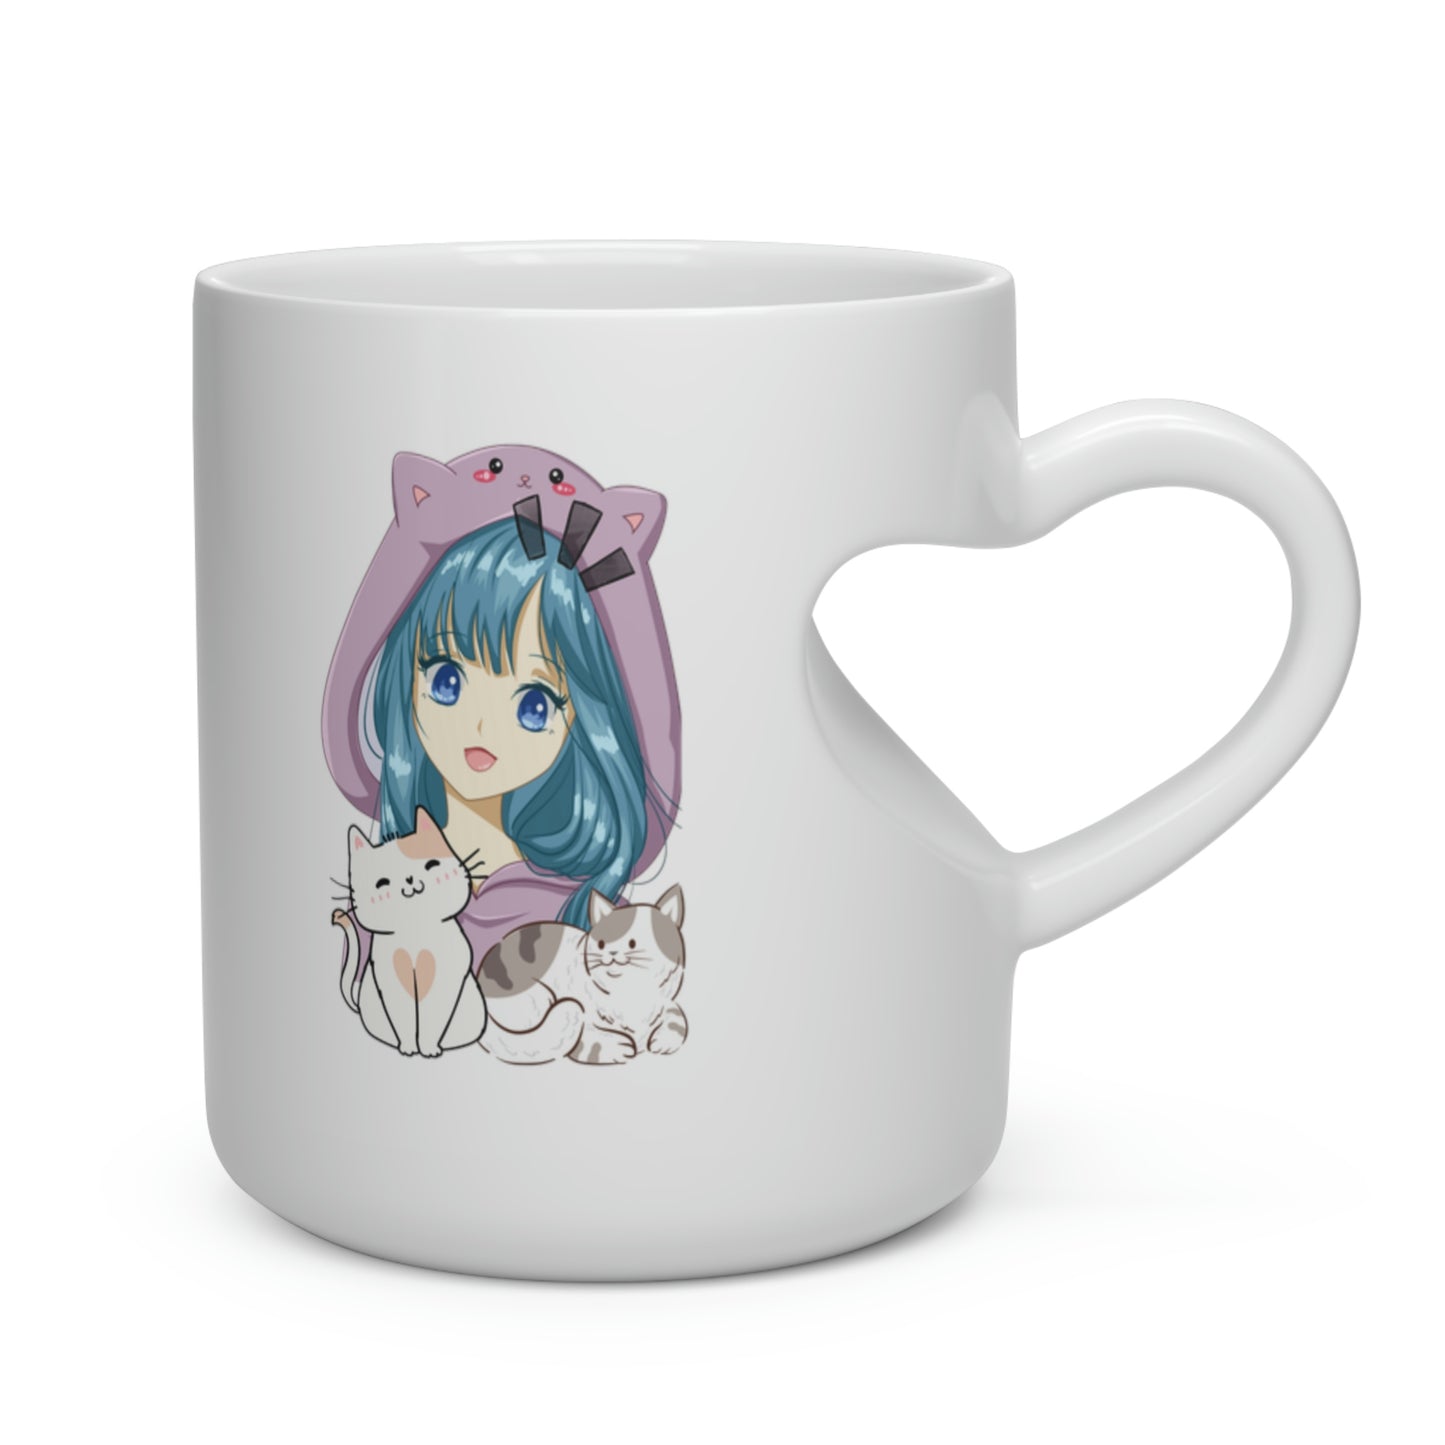 Anime Collection - Heart Shape Mug - Anime Kitties